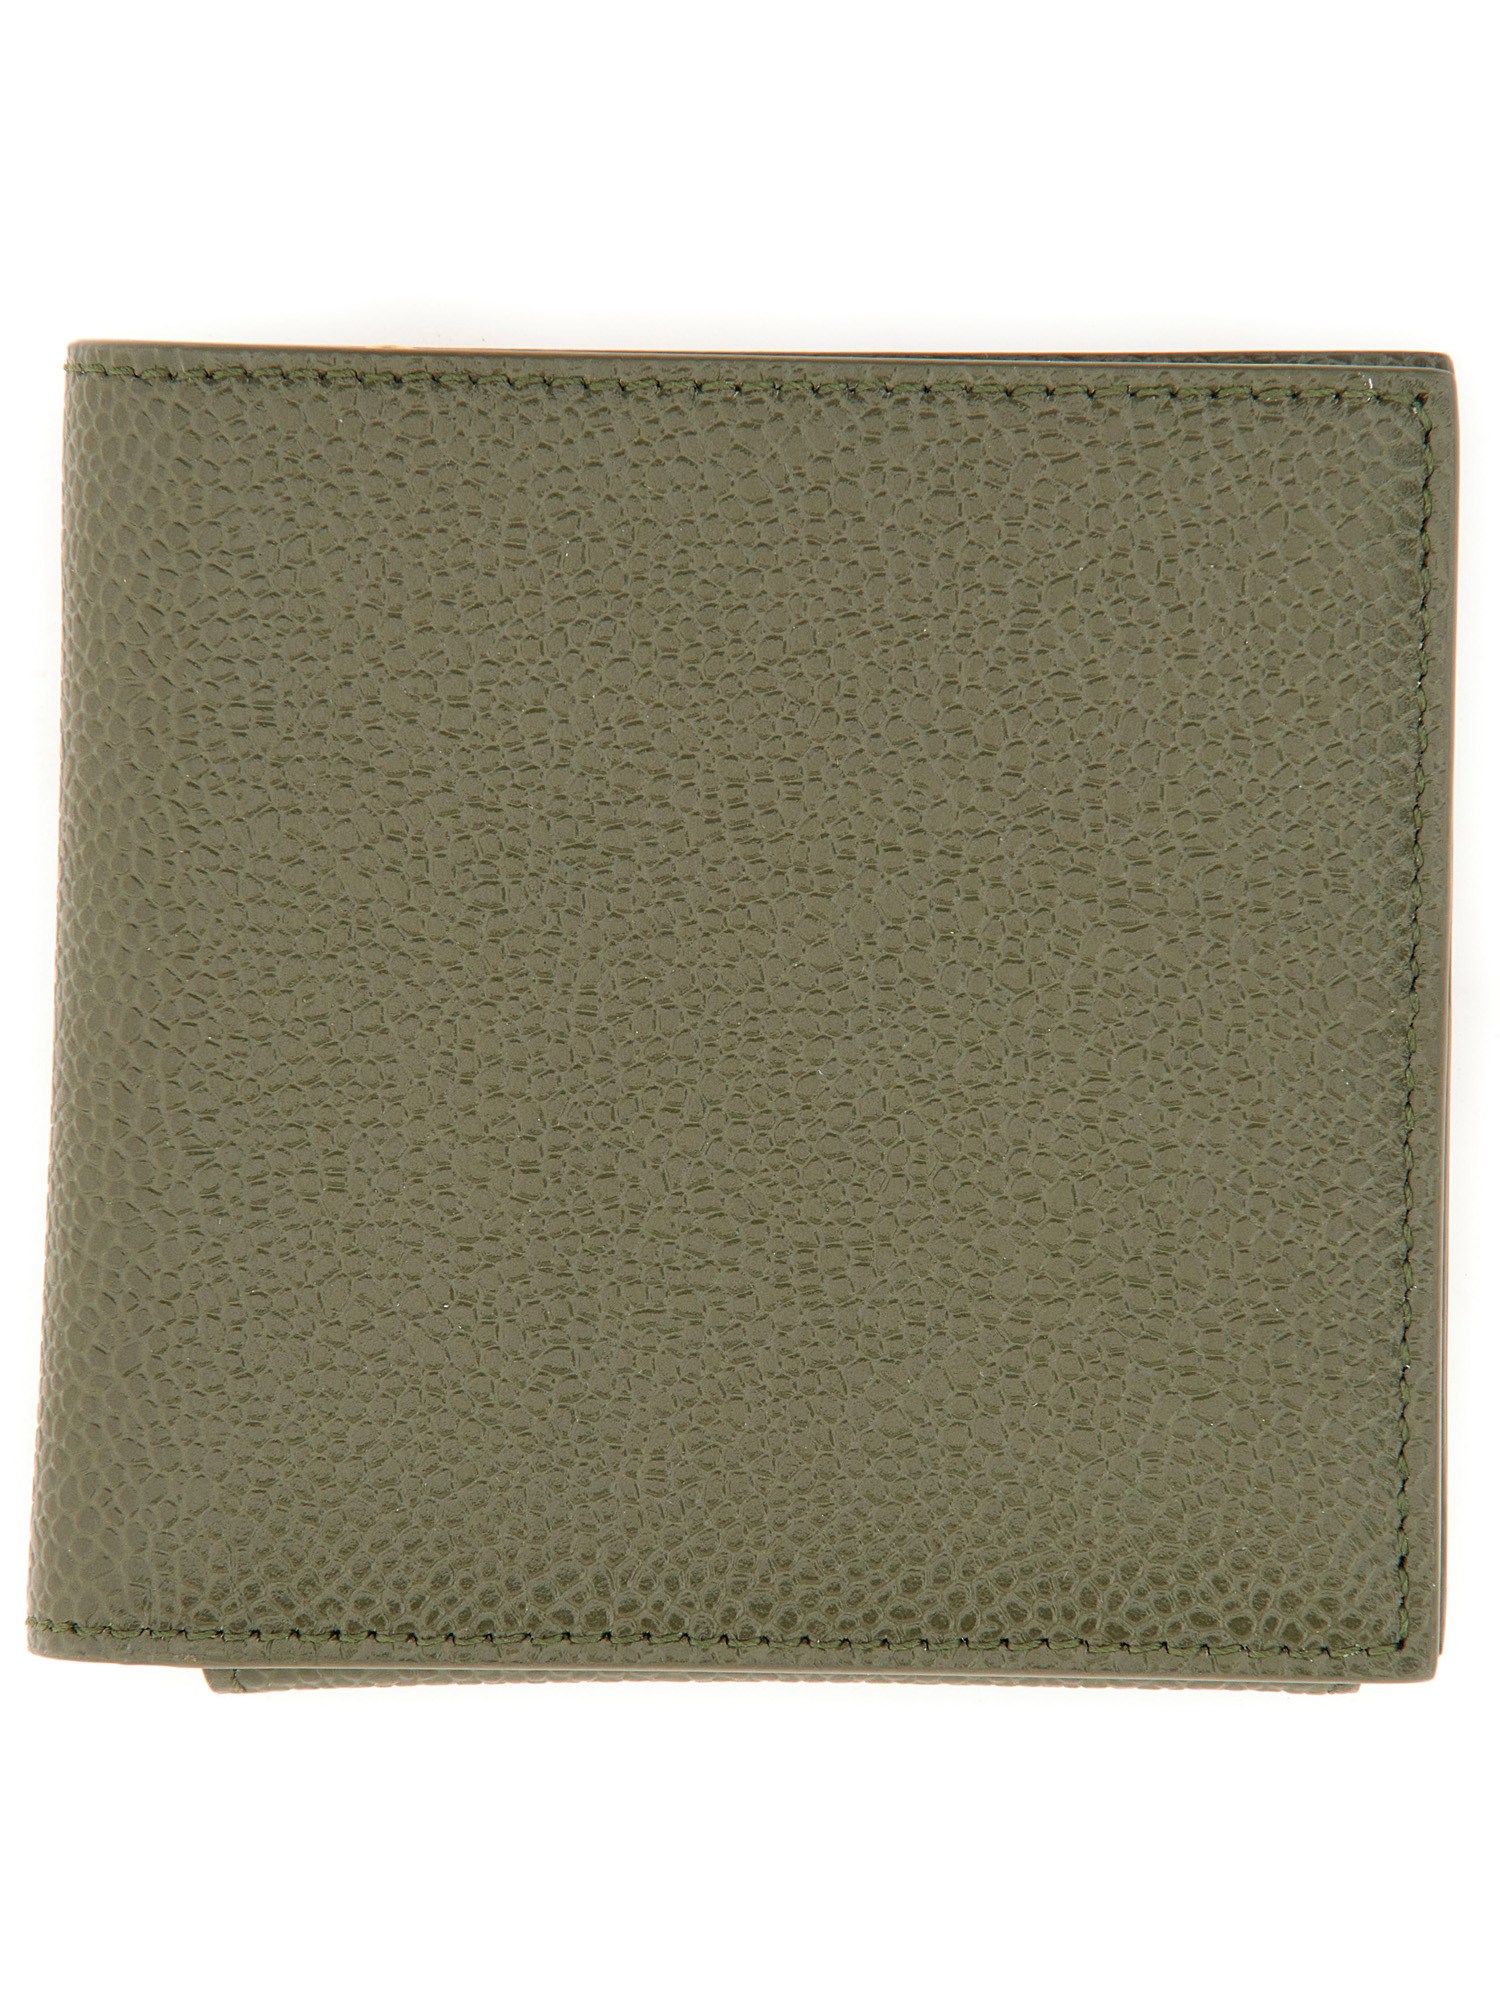 Thom Browne thom browne leather wallet